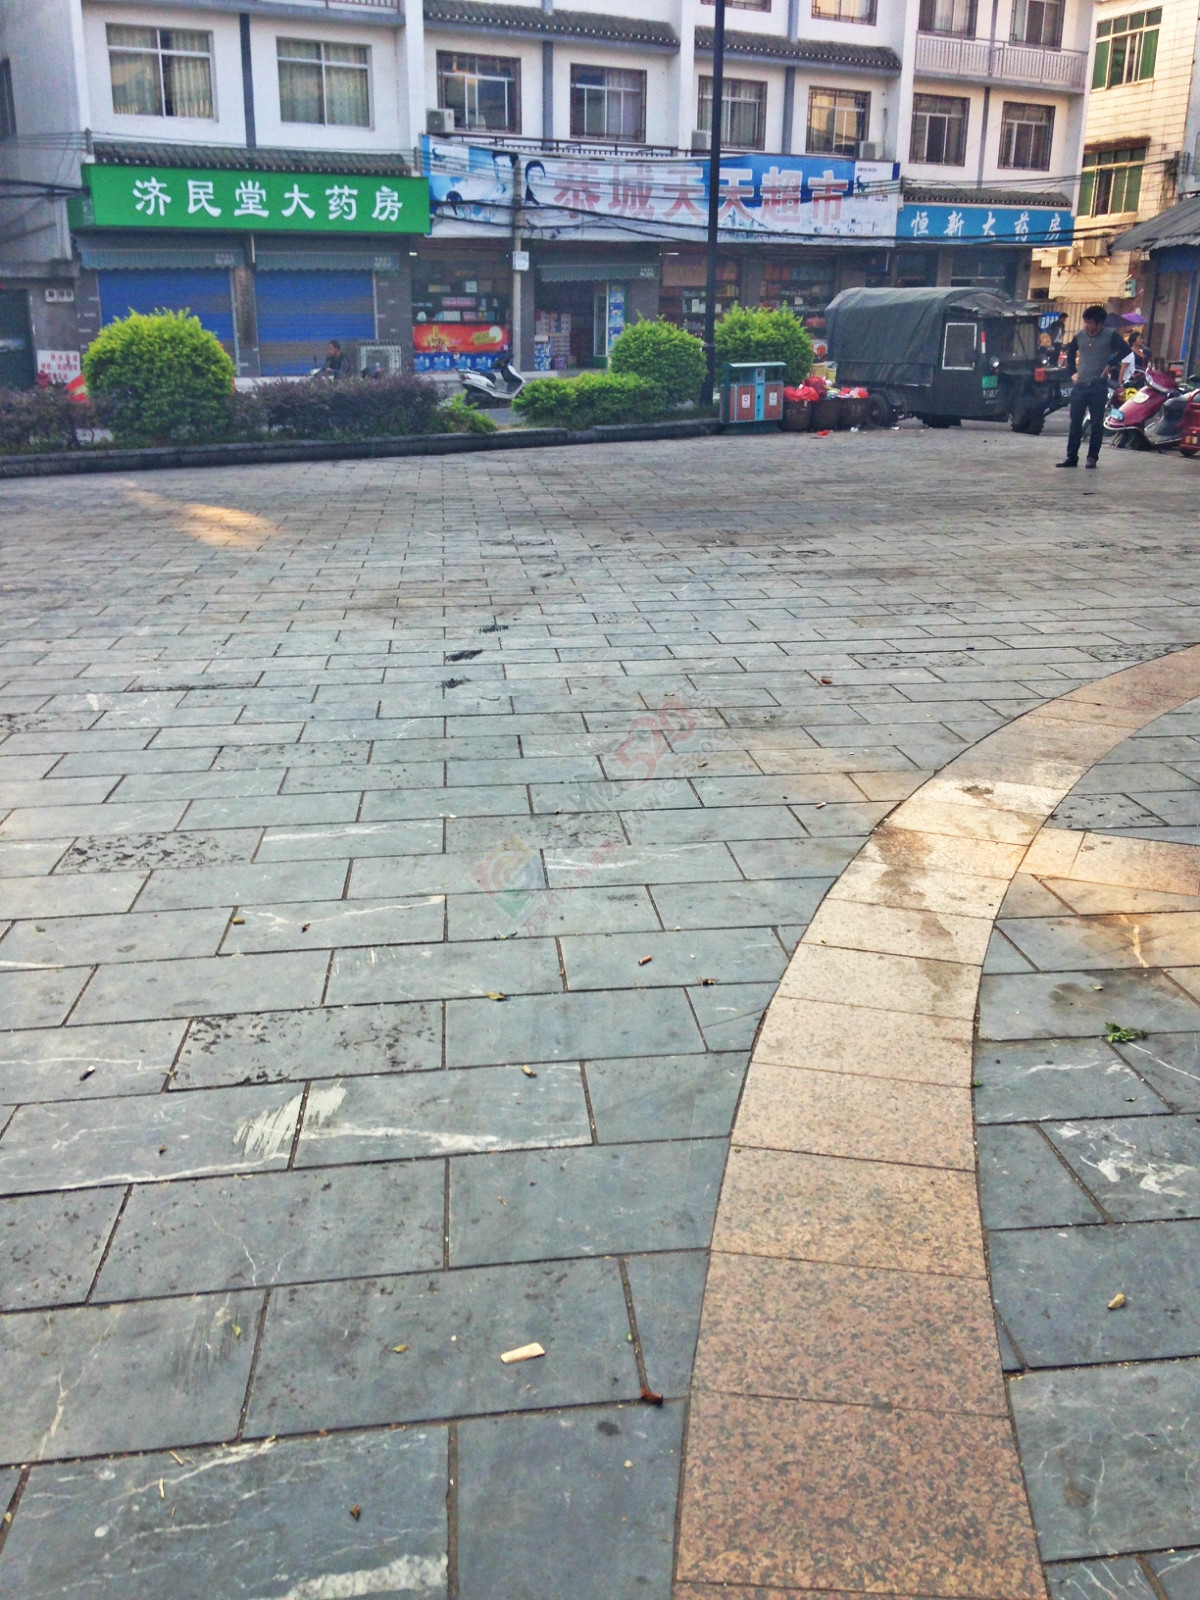 昔日的小广场如今已成了“垃圾堆”1000 / 作者:恭城520小奈姐姐 / 帖子ID:128568